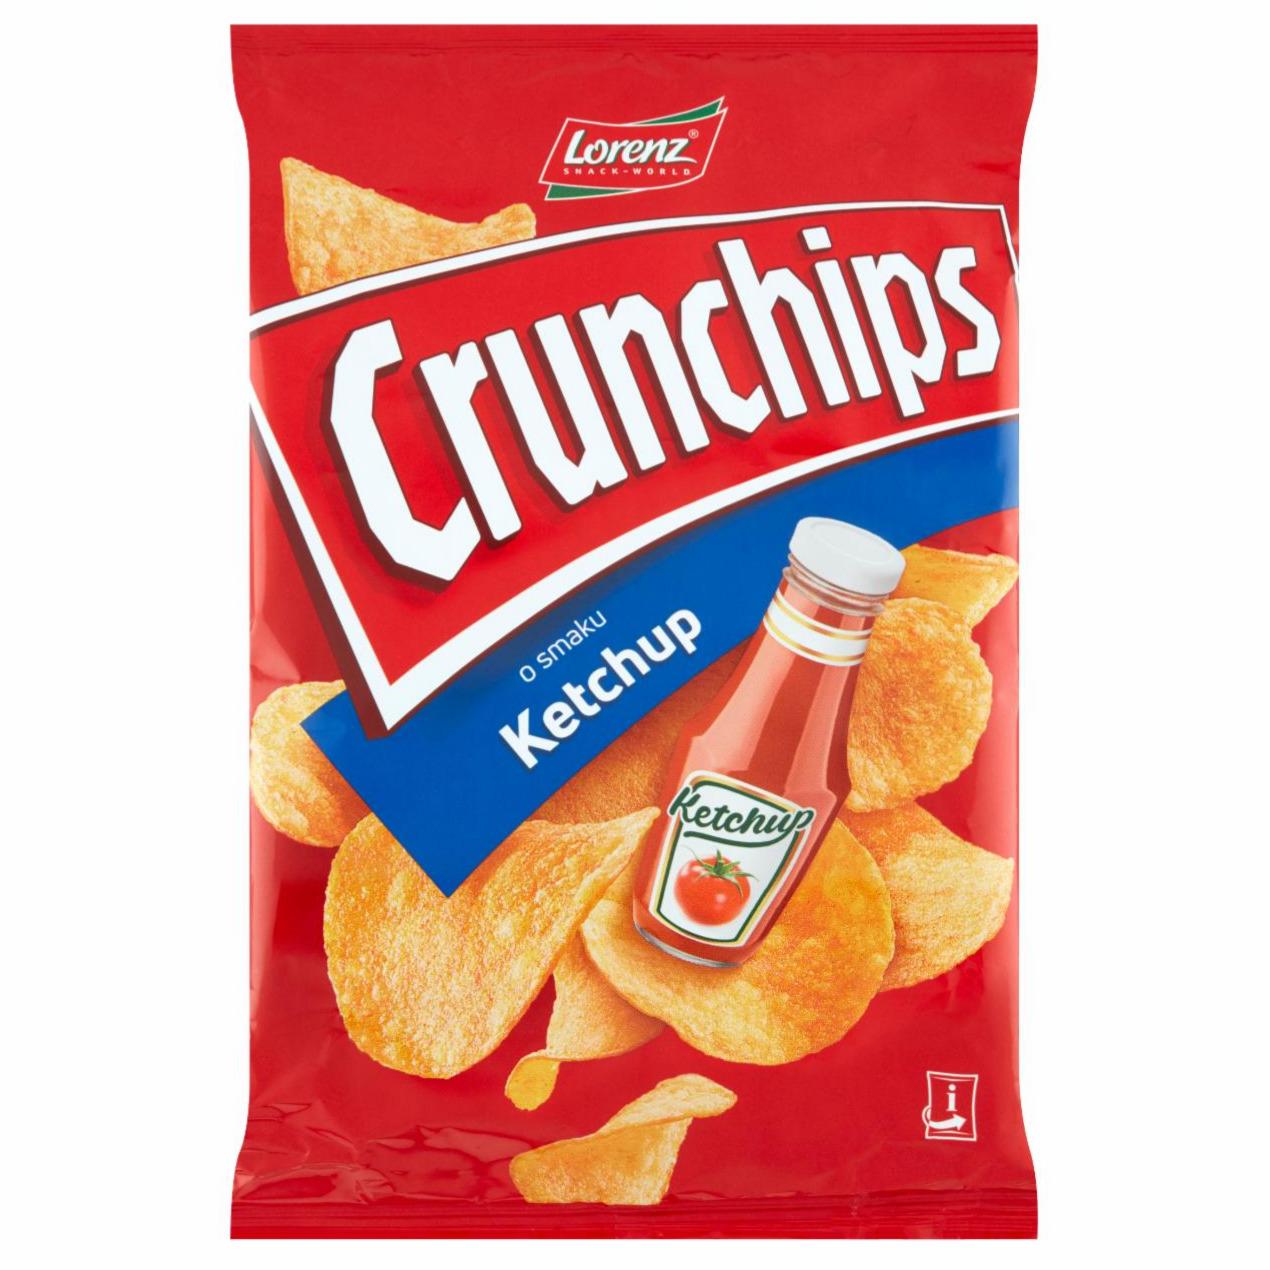 Zdjęcia - Crunchips Chipsy ziemniaczane ketchup 140 g